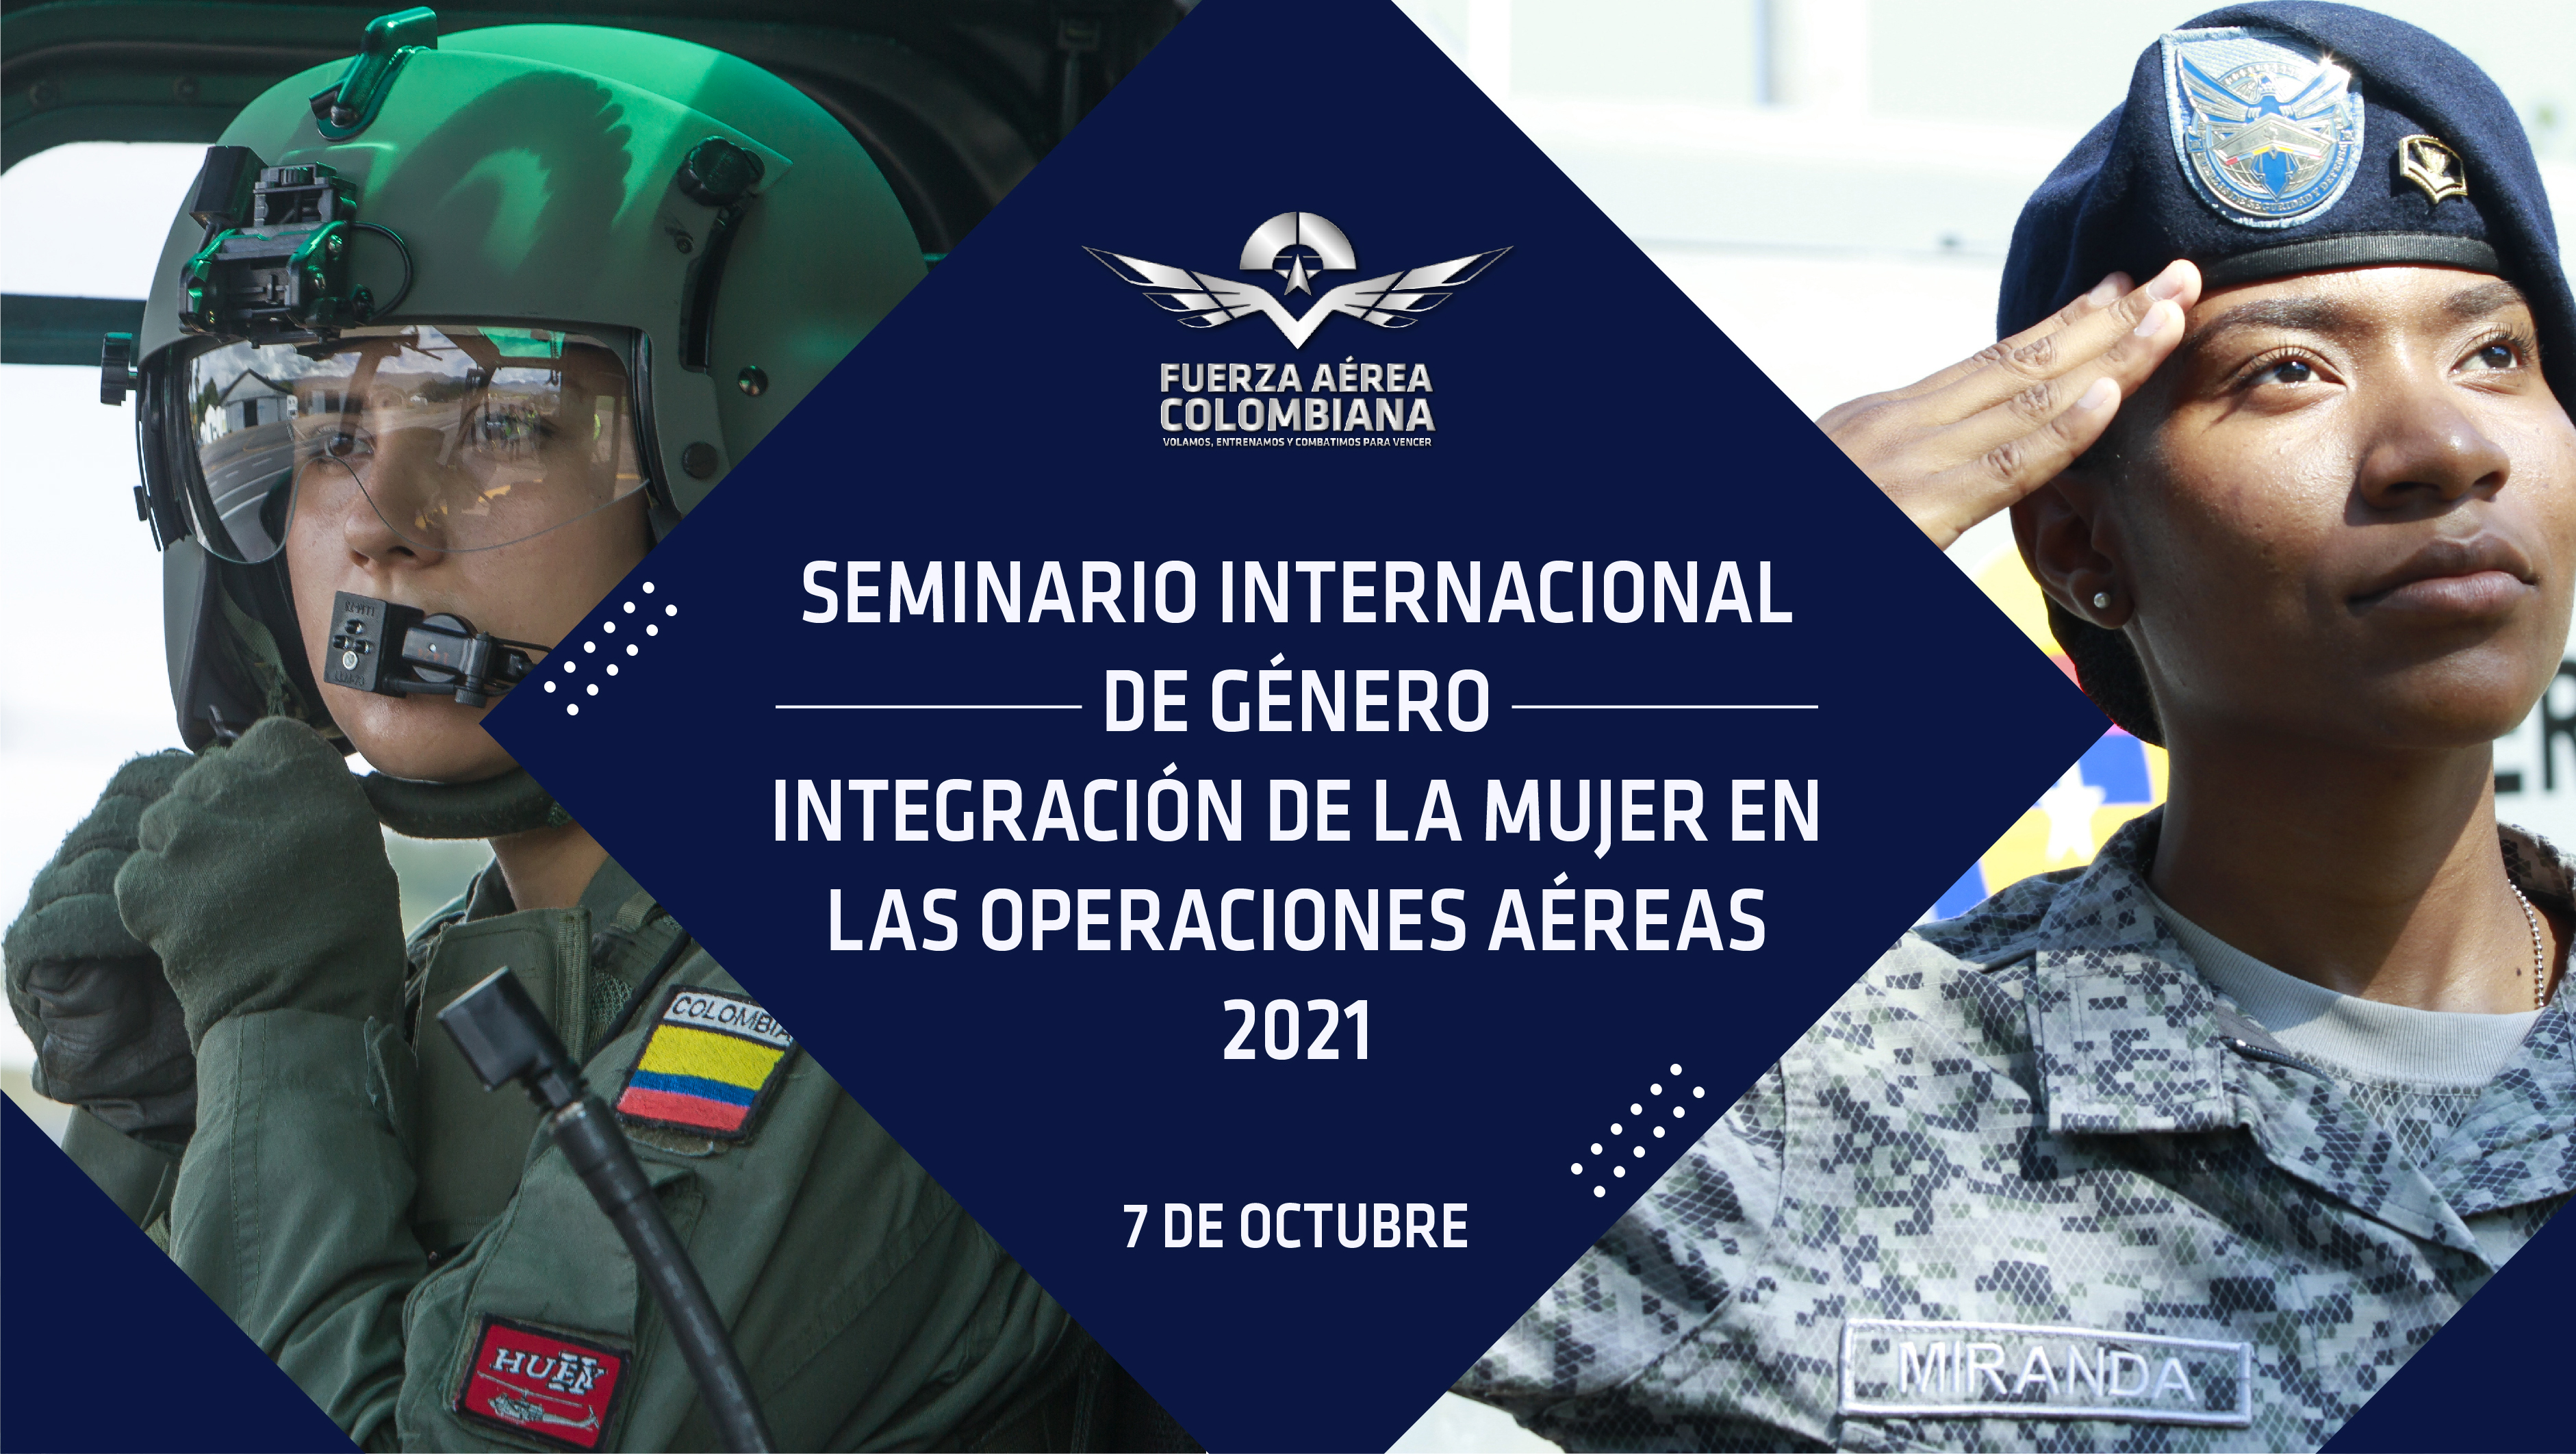 Primer seminario internacional de género liderado por su Fuerza Aérea Colombiana